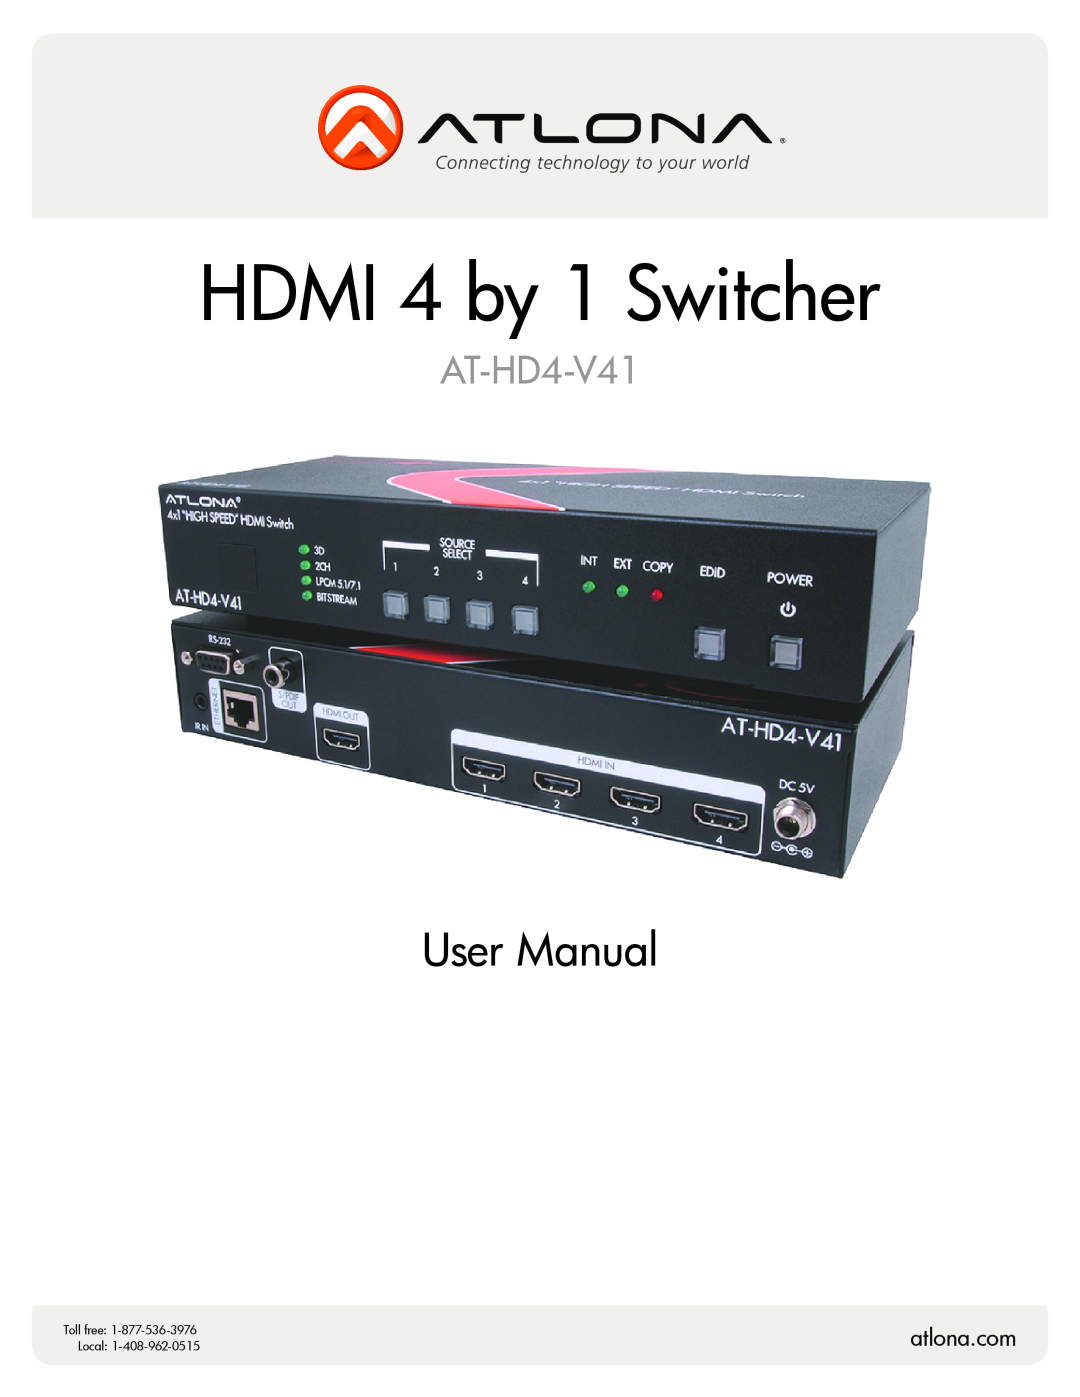 Atlona AT-HD4-V41 user manual atlona.com, Atlona HDMI 4 by 1 Switcher, User Manual, Local 